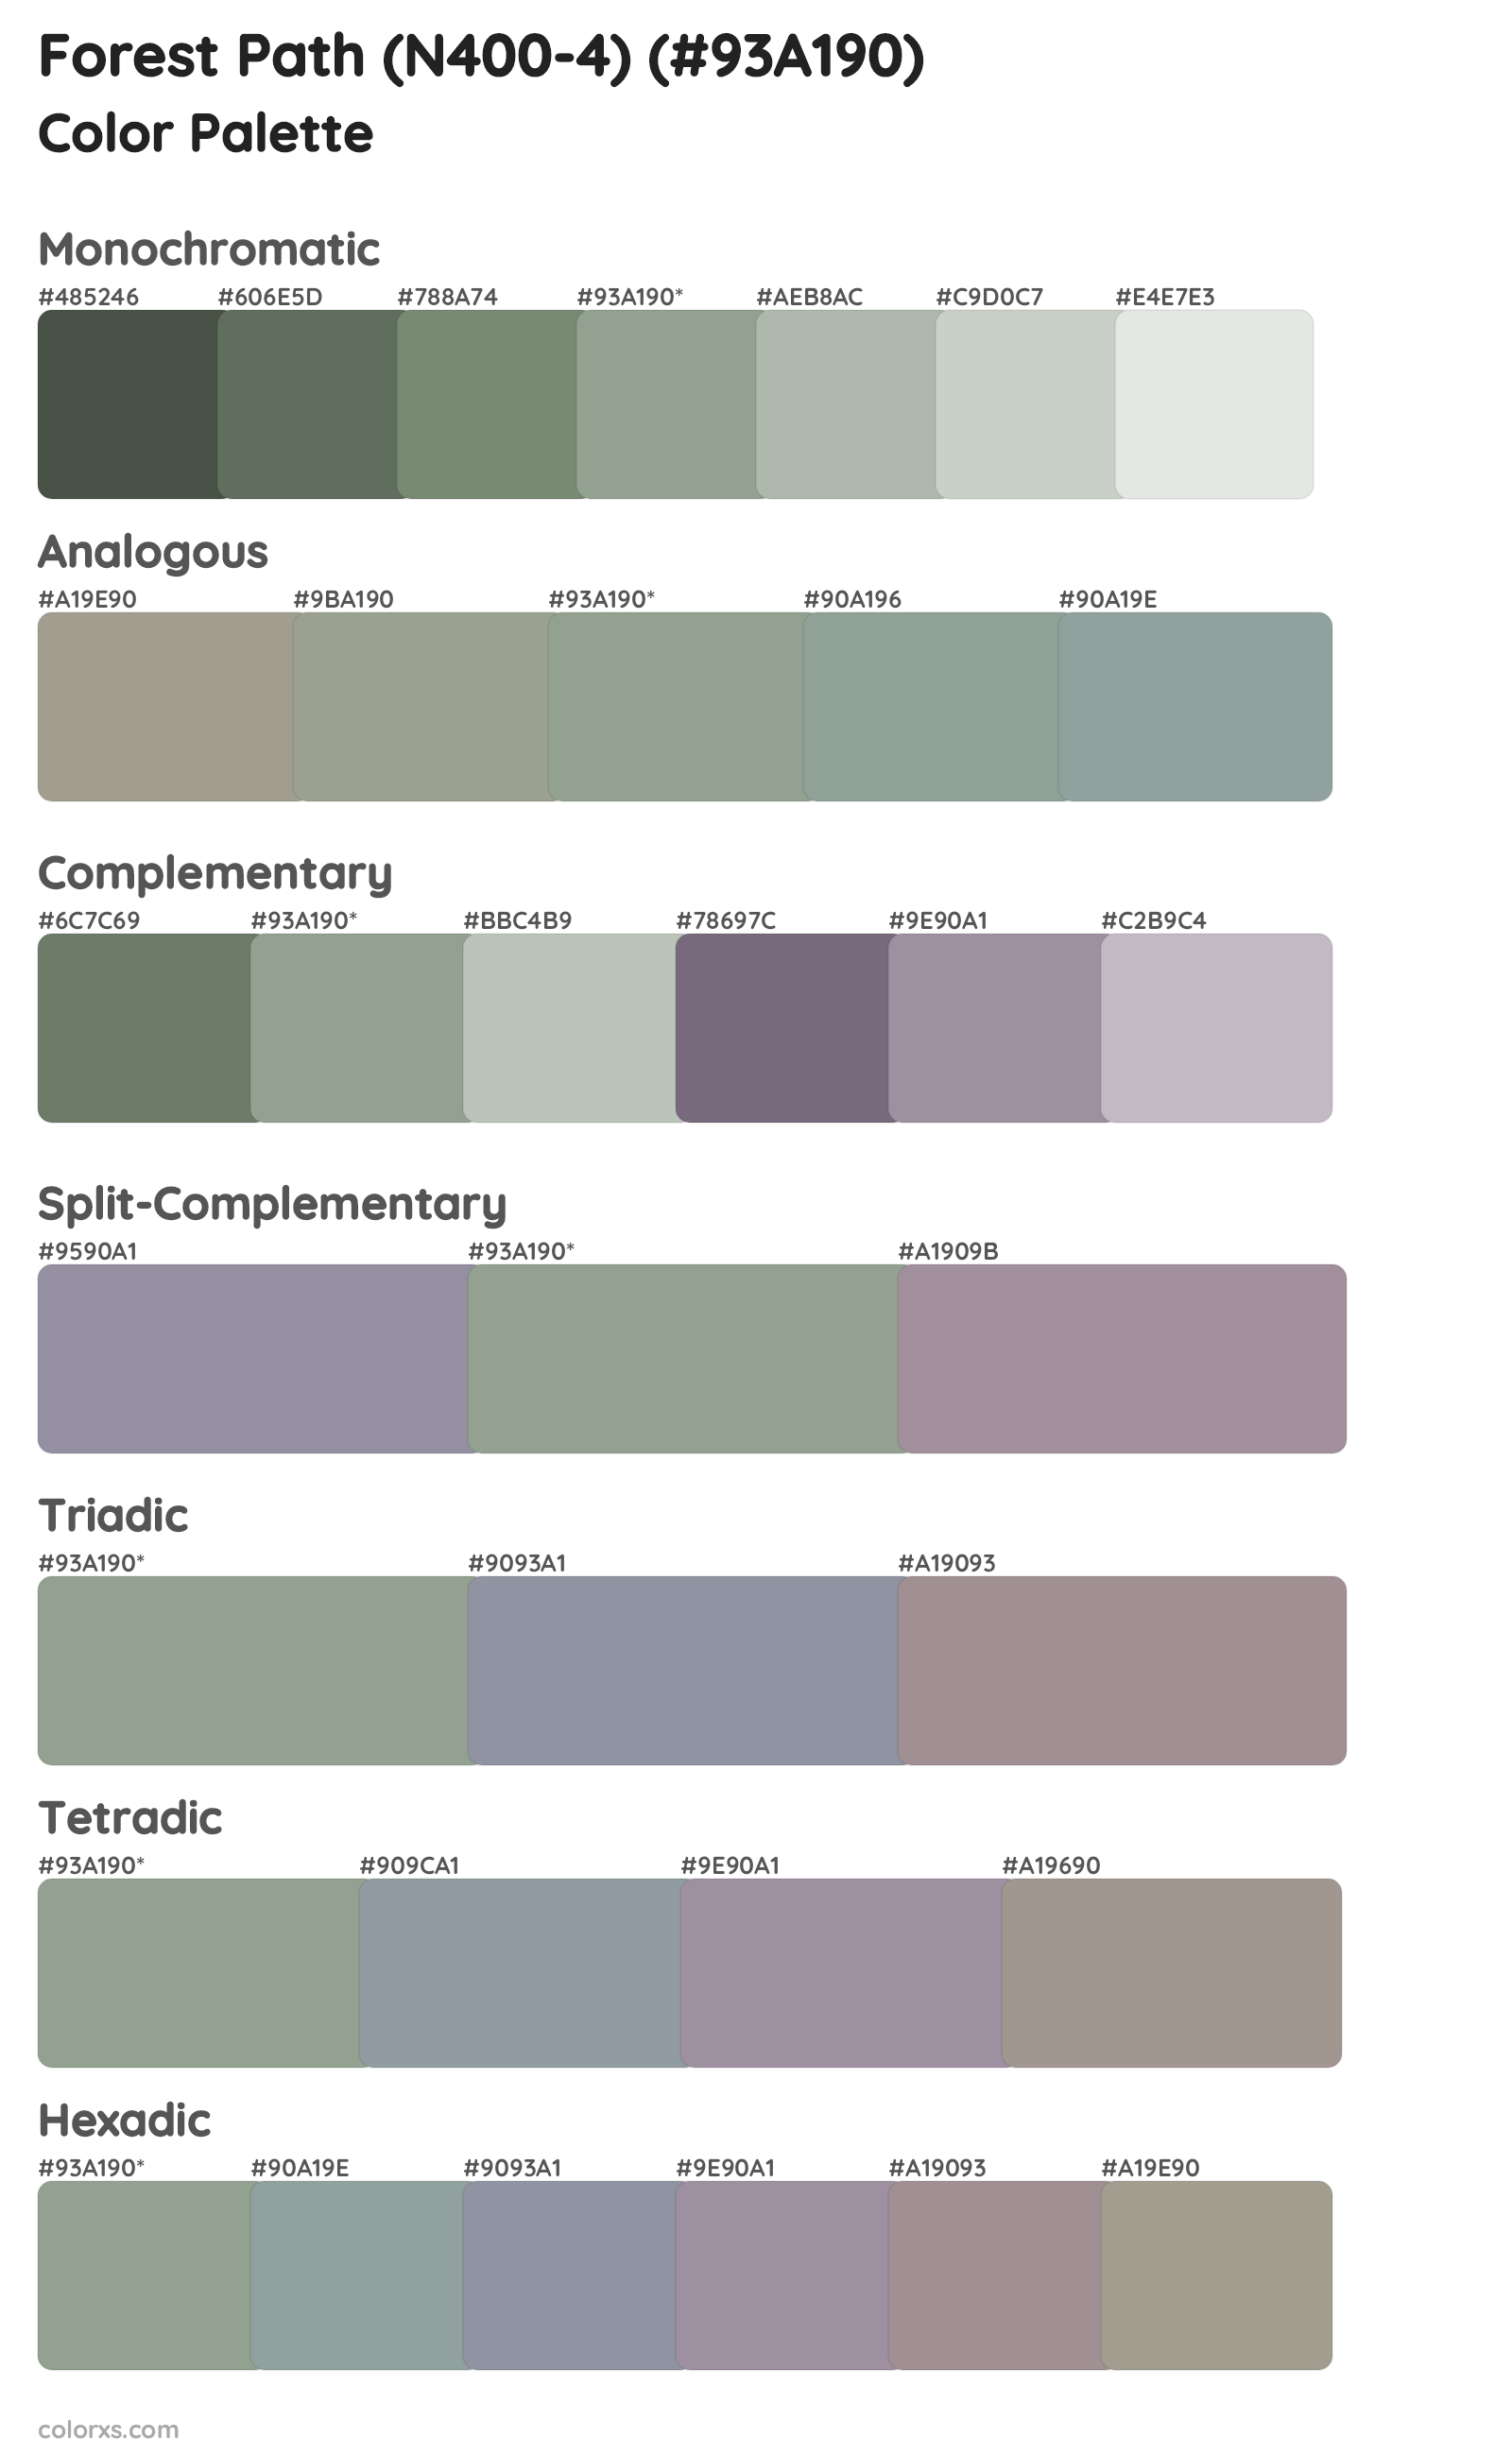 Forest Path (N400-4) Color Scheme Palettes